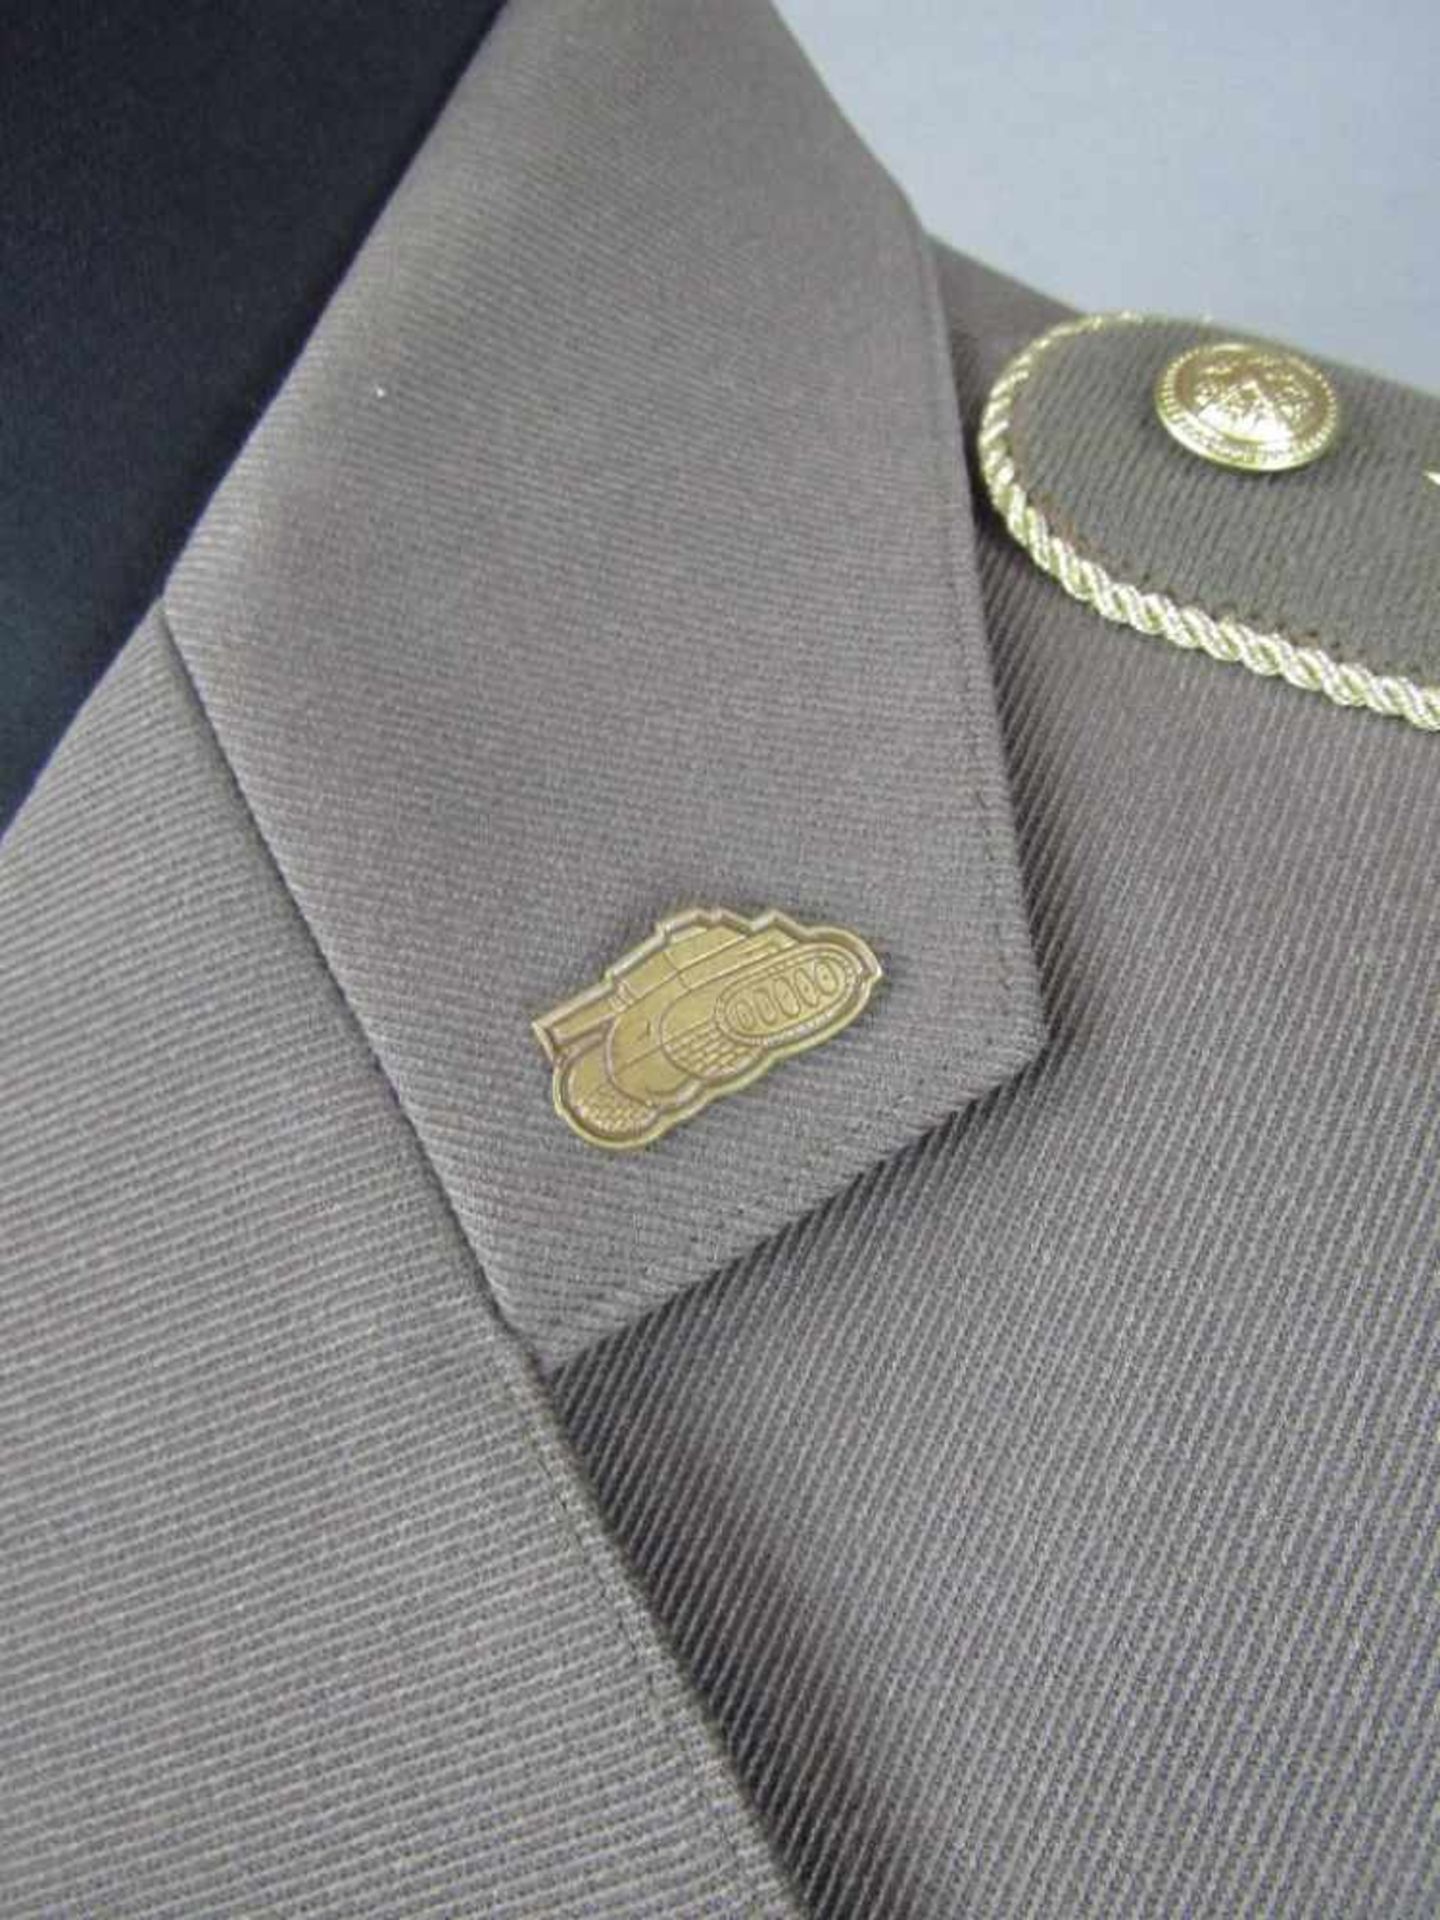 Uniform Russland General hohe Auszeichnungen - Image 5 of 10